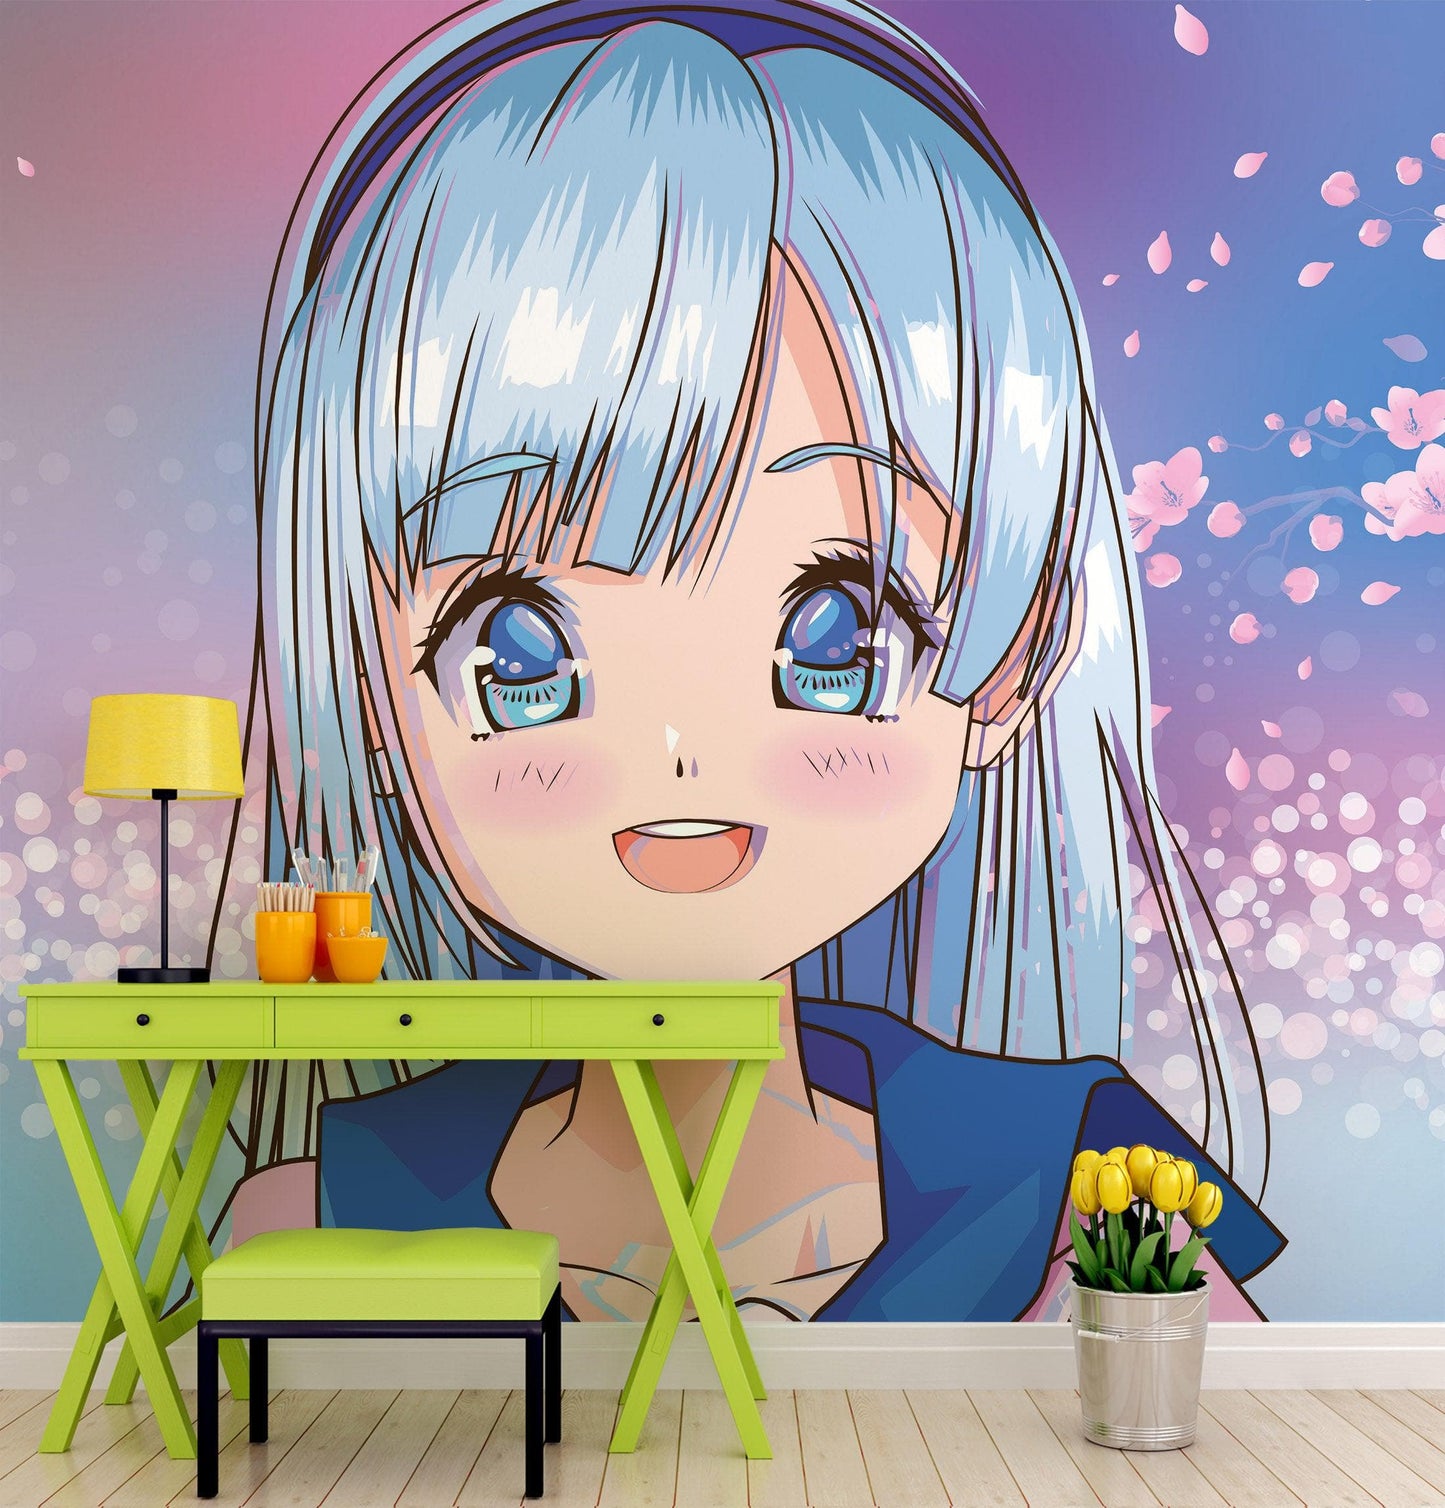 XSPWXN Kawaii Anime Girl Cool (2) Cute Girl Mural Wall Scroll